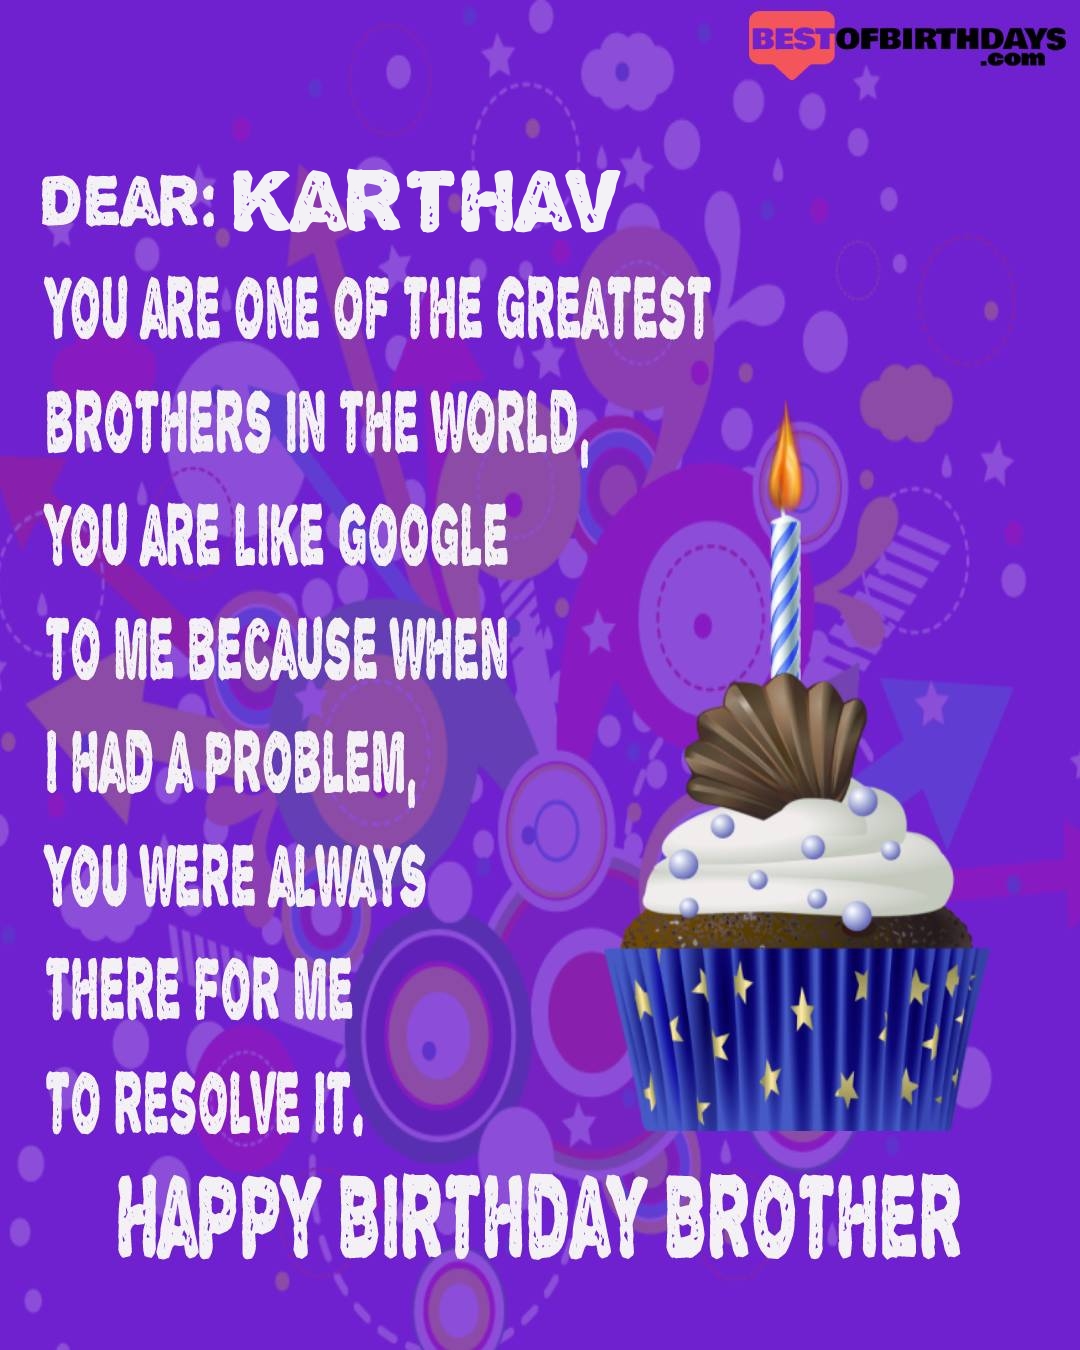 Happy birthday karthav bhai brother bro